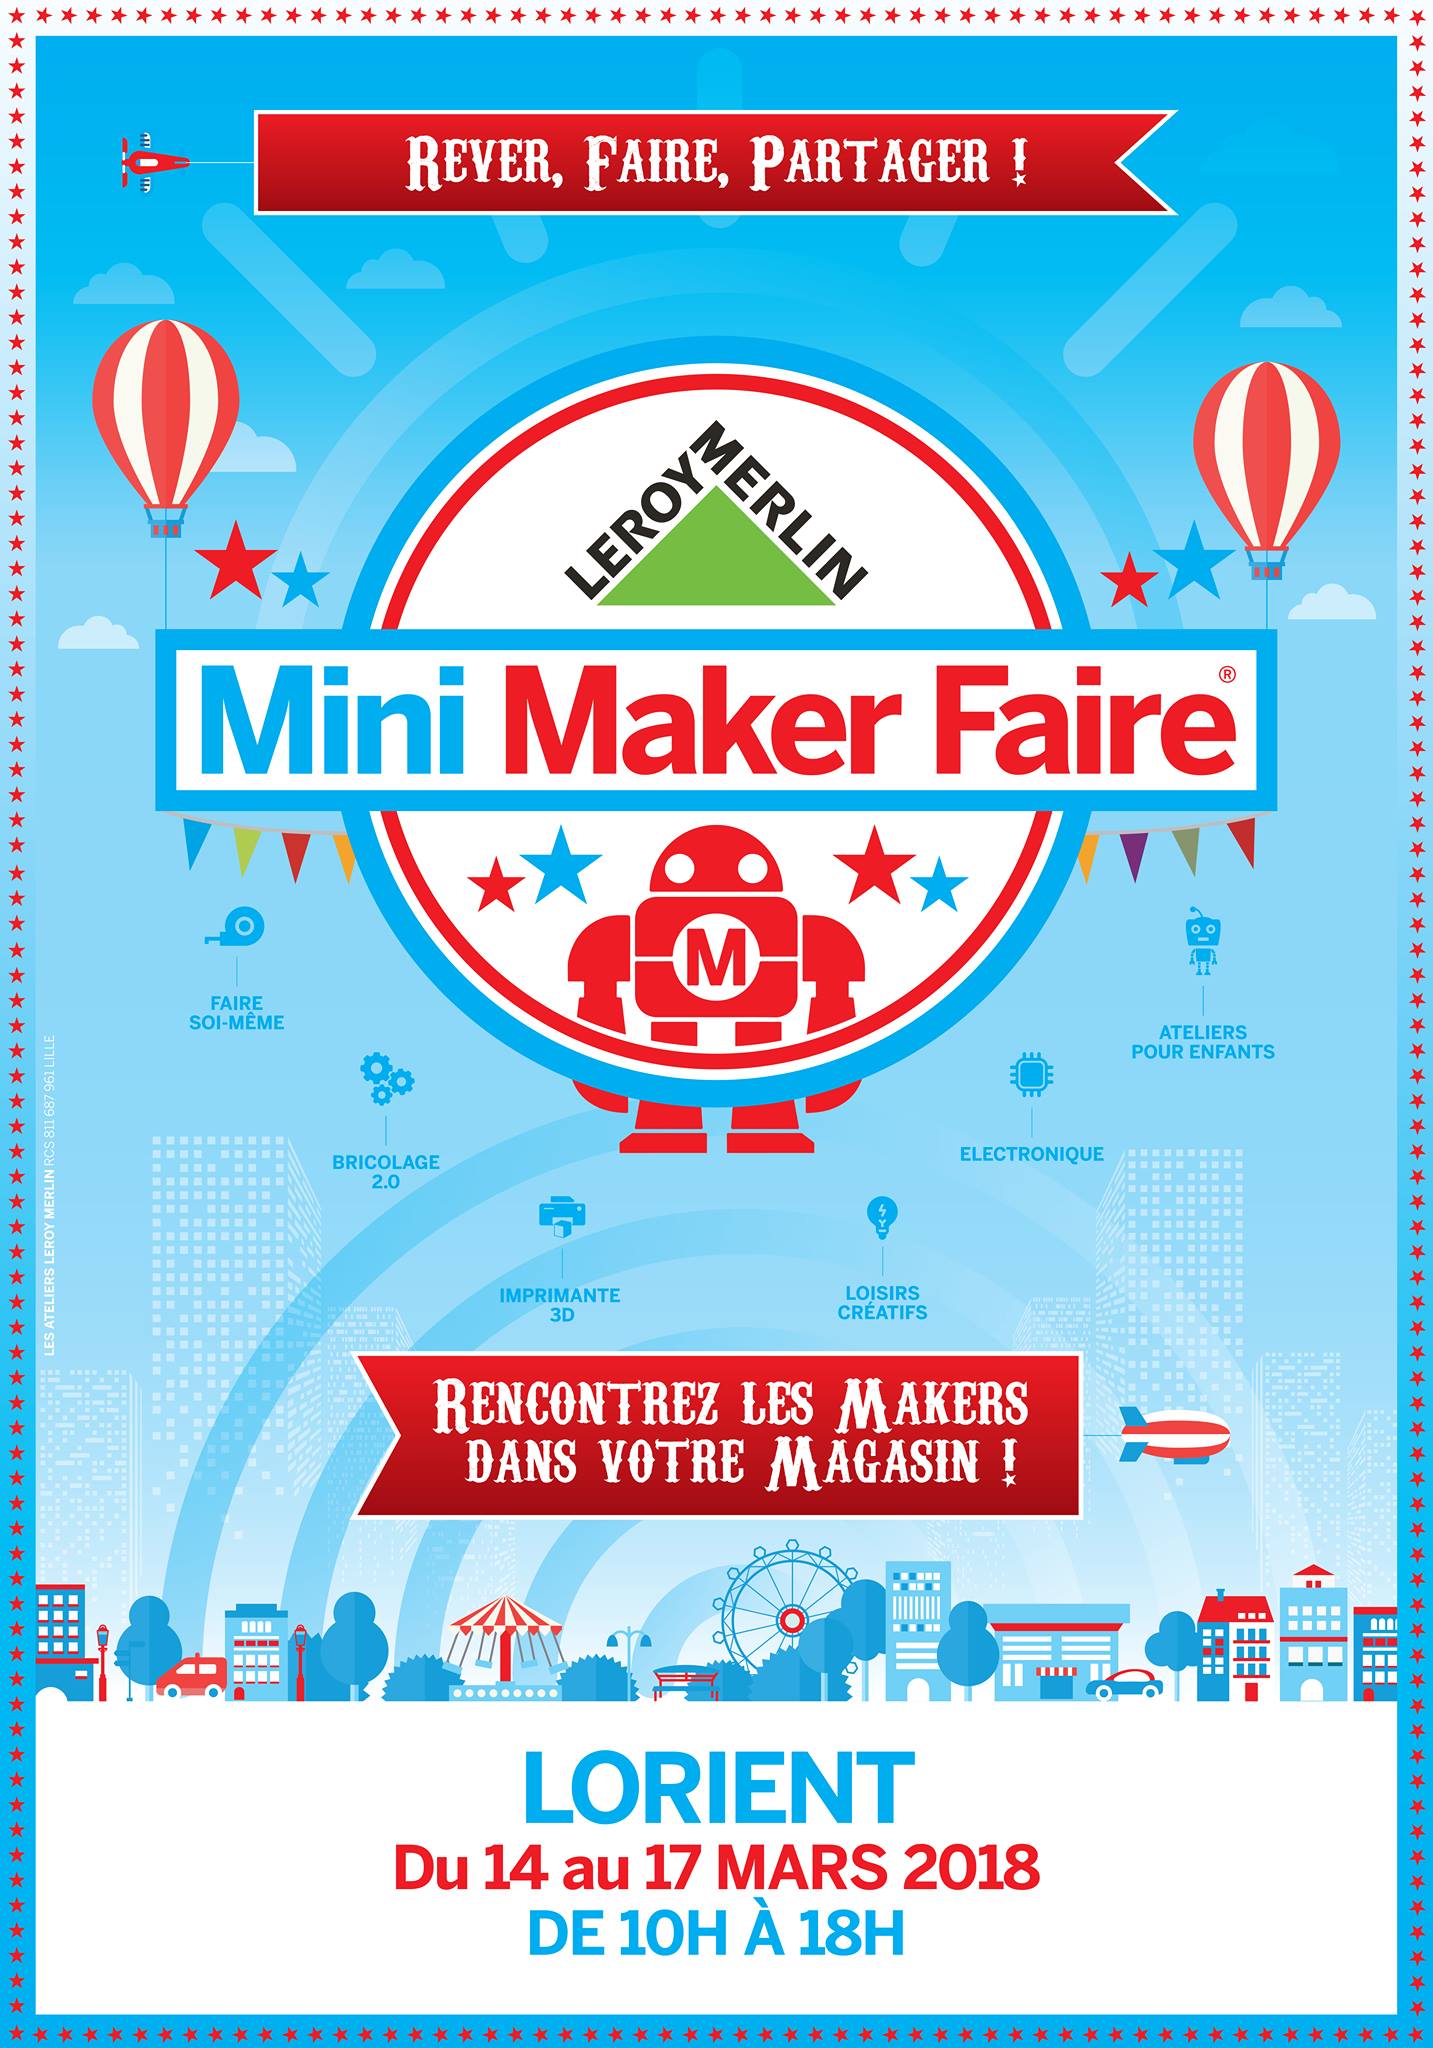 Mini Maker Faire organisé par Leroy Merlin de Quéven - Lorient